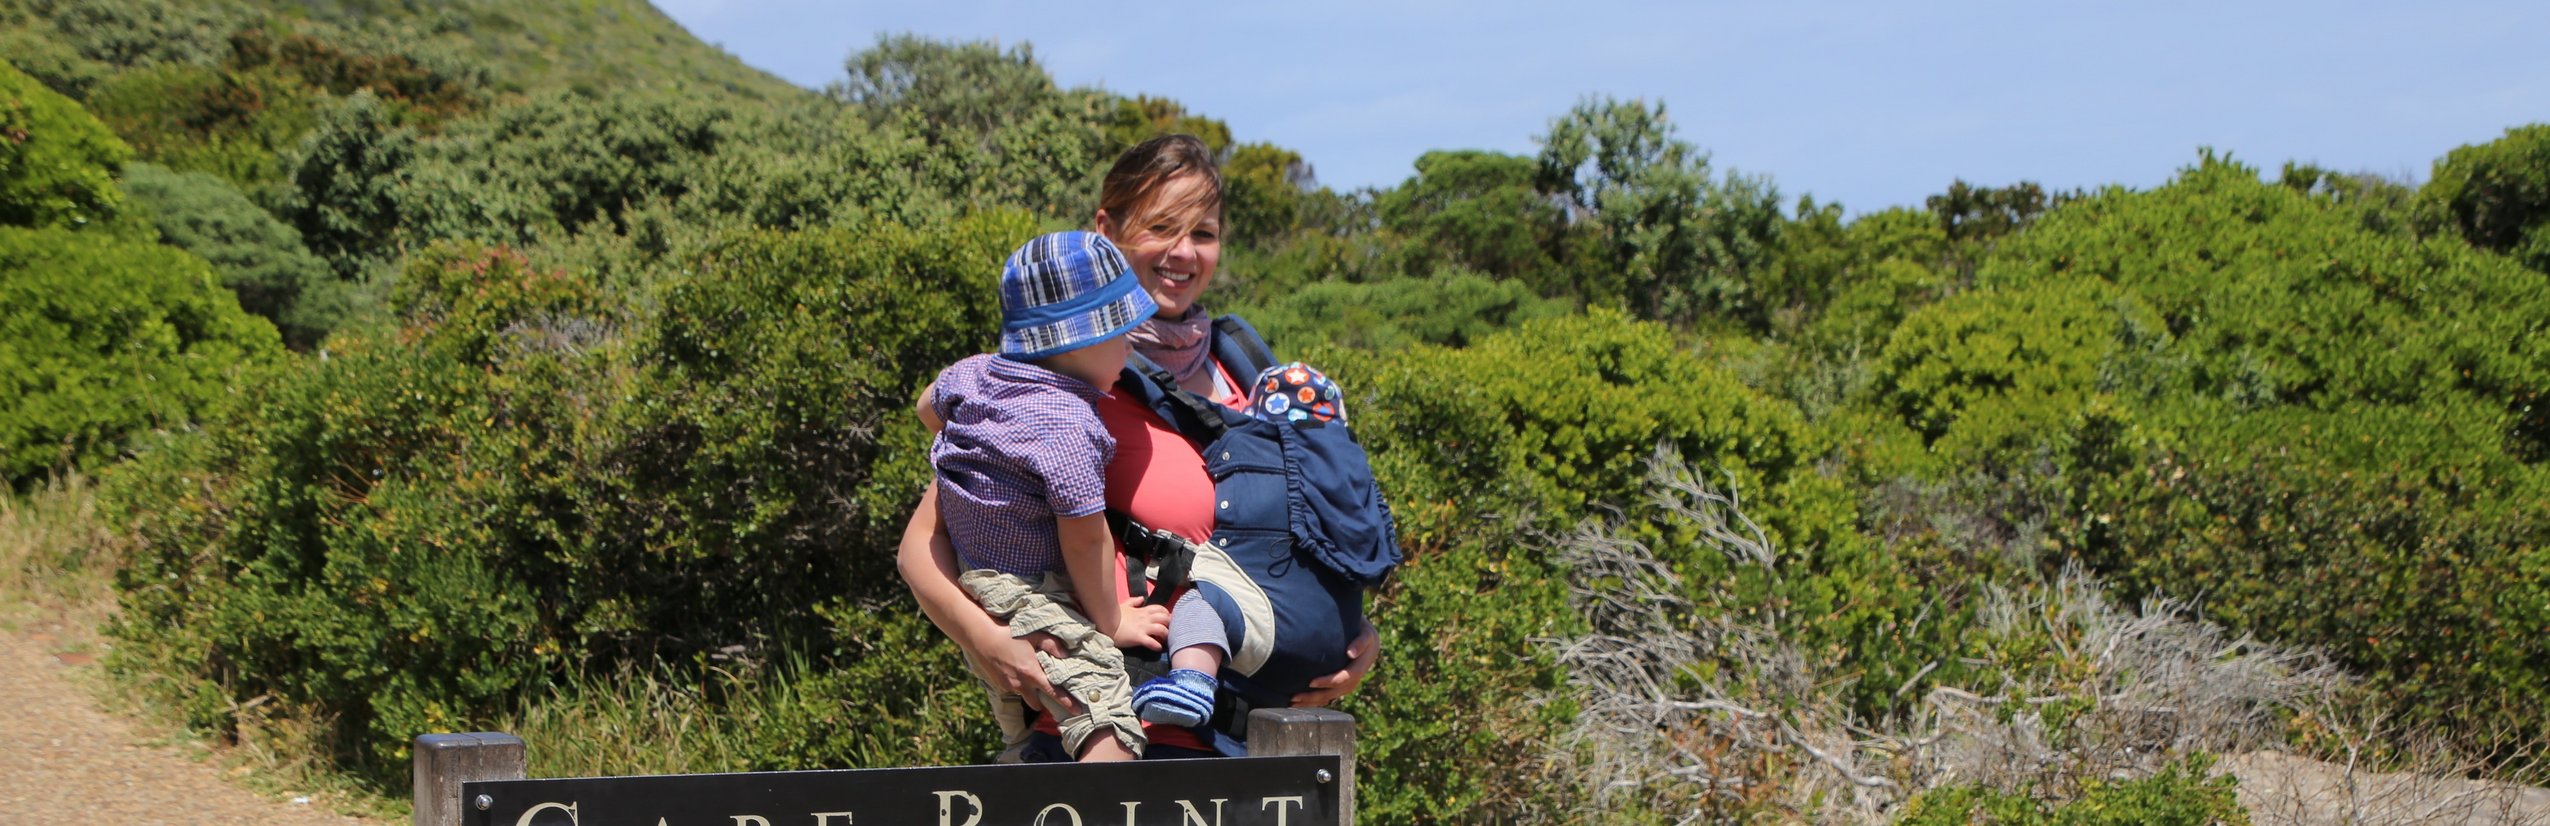 Reisen mit Baby - Fernreise mit Baby - Reise Elternzeit - Kap der Guten Hoffnung - Südafrika